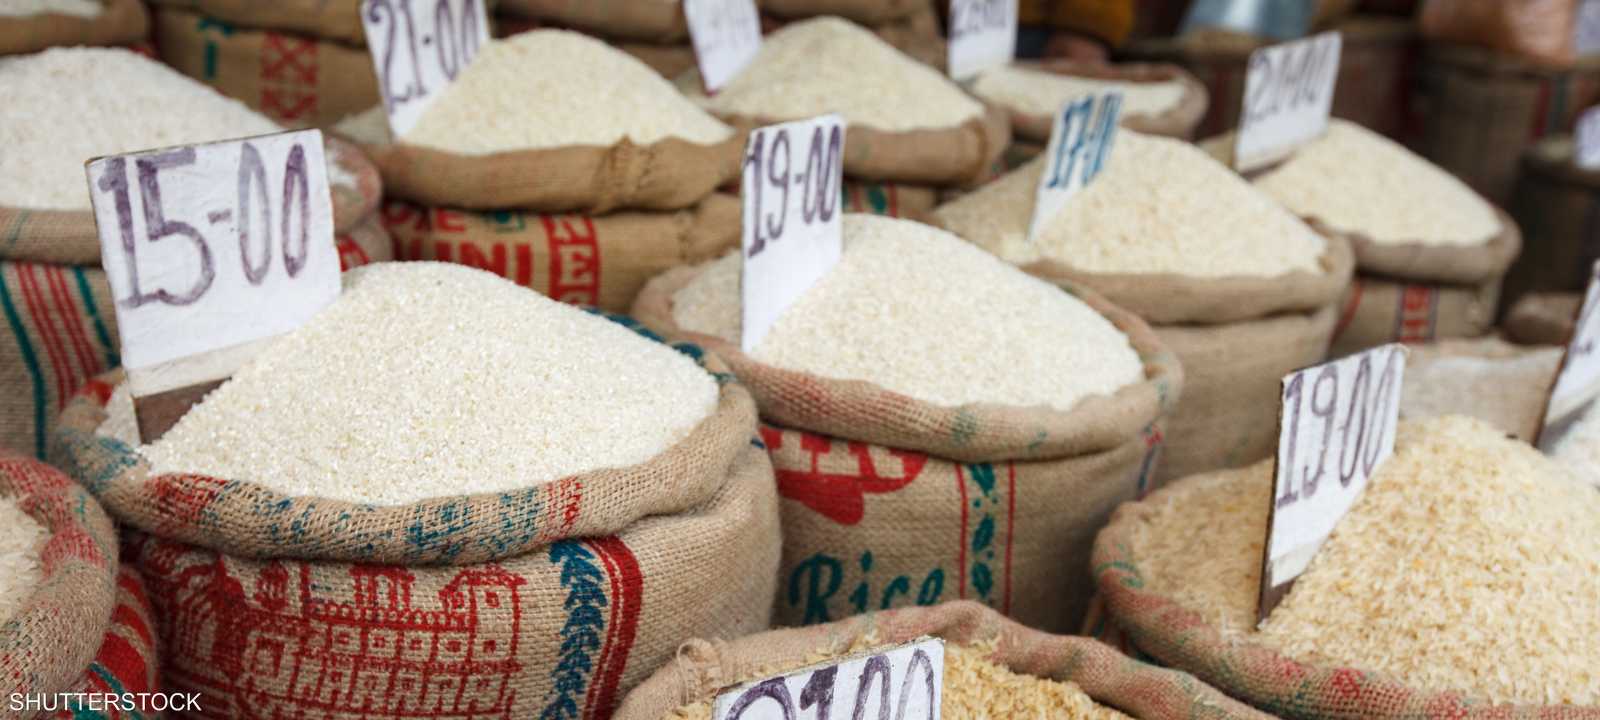 ارتفاع أسعار الأرز لأعلى مستوى في 15 عاما